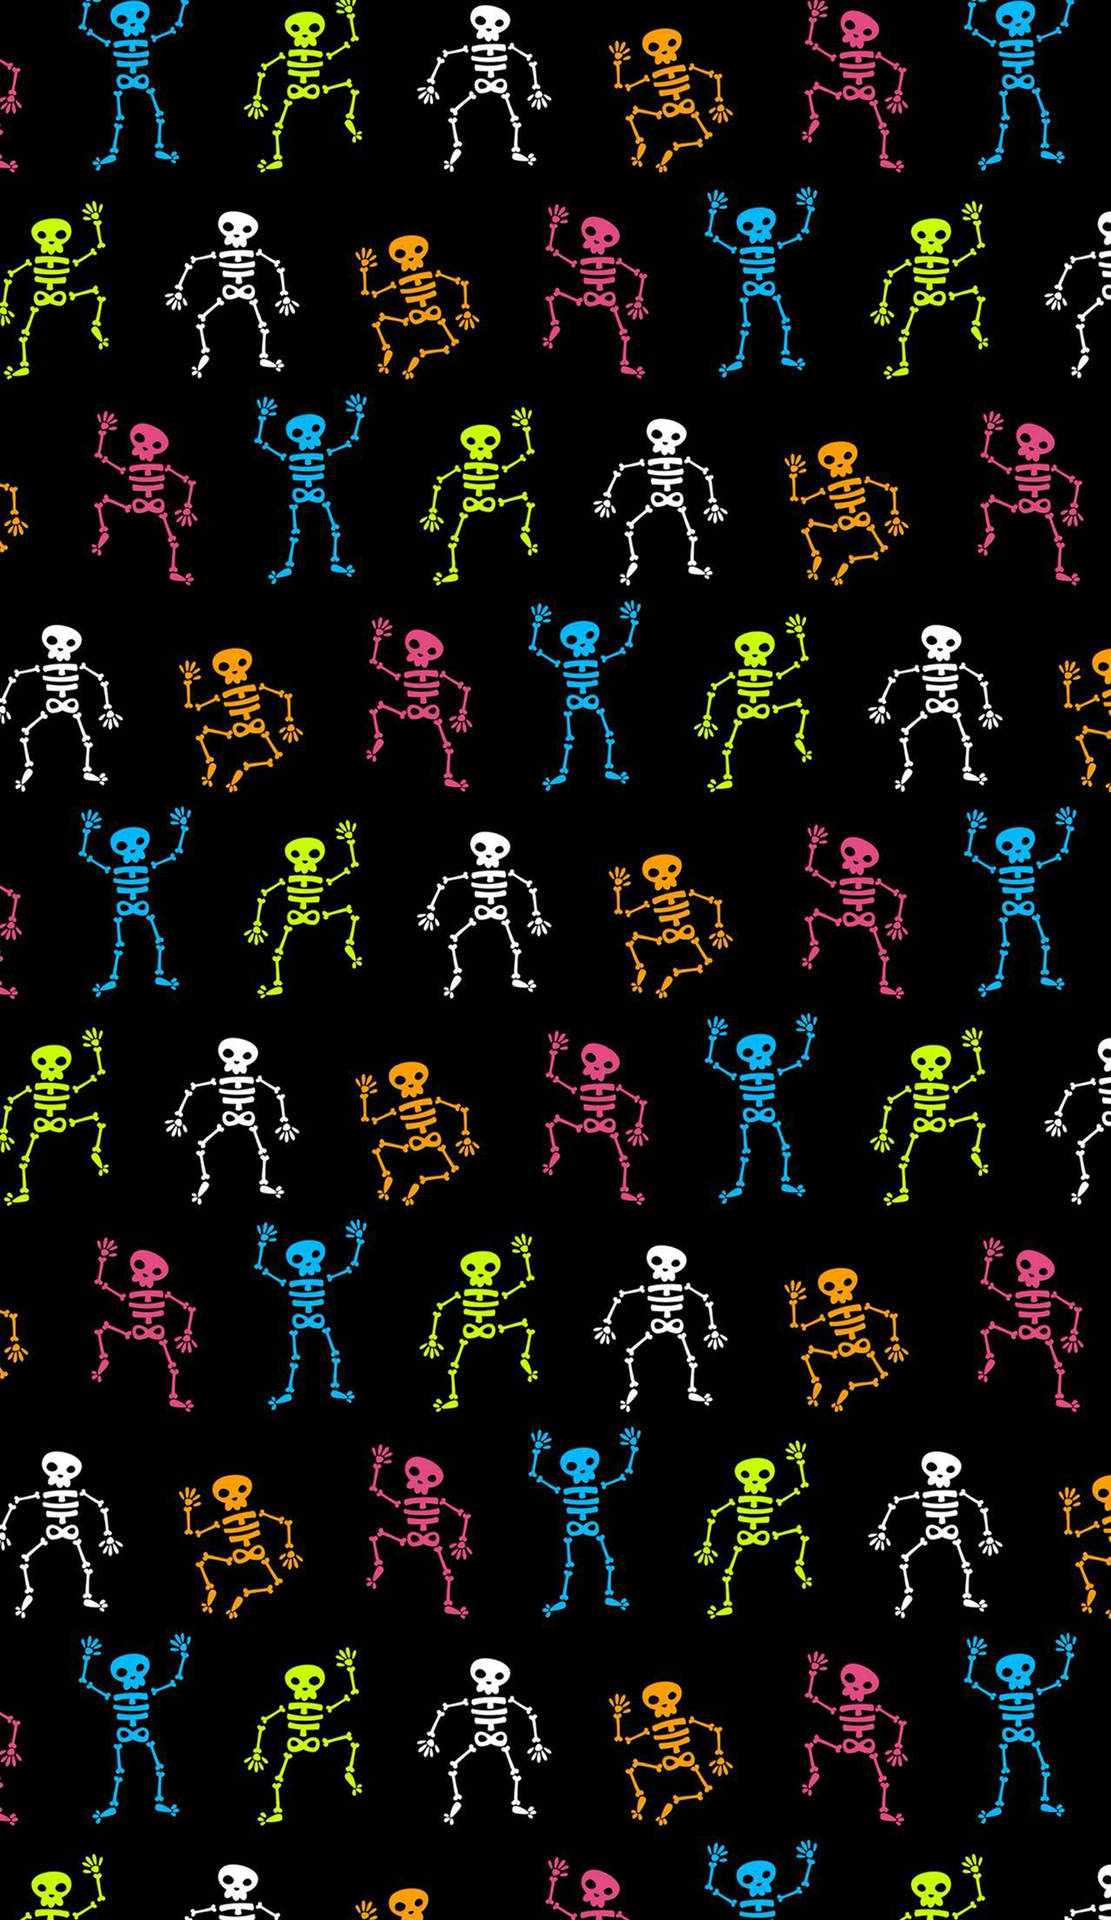 Skeleton Wallpaper & Background For FREE